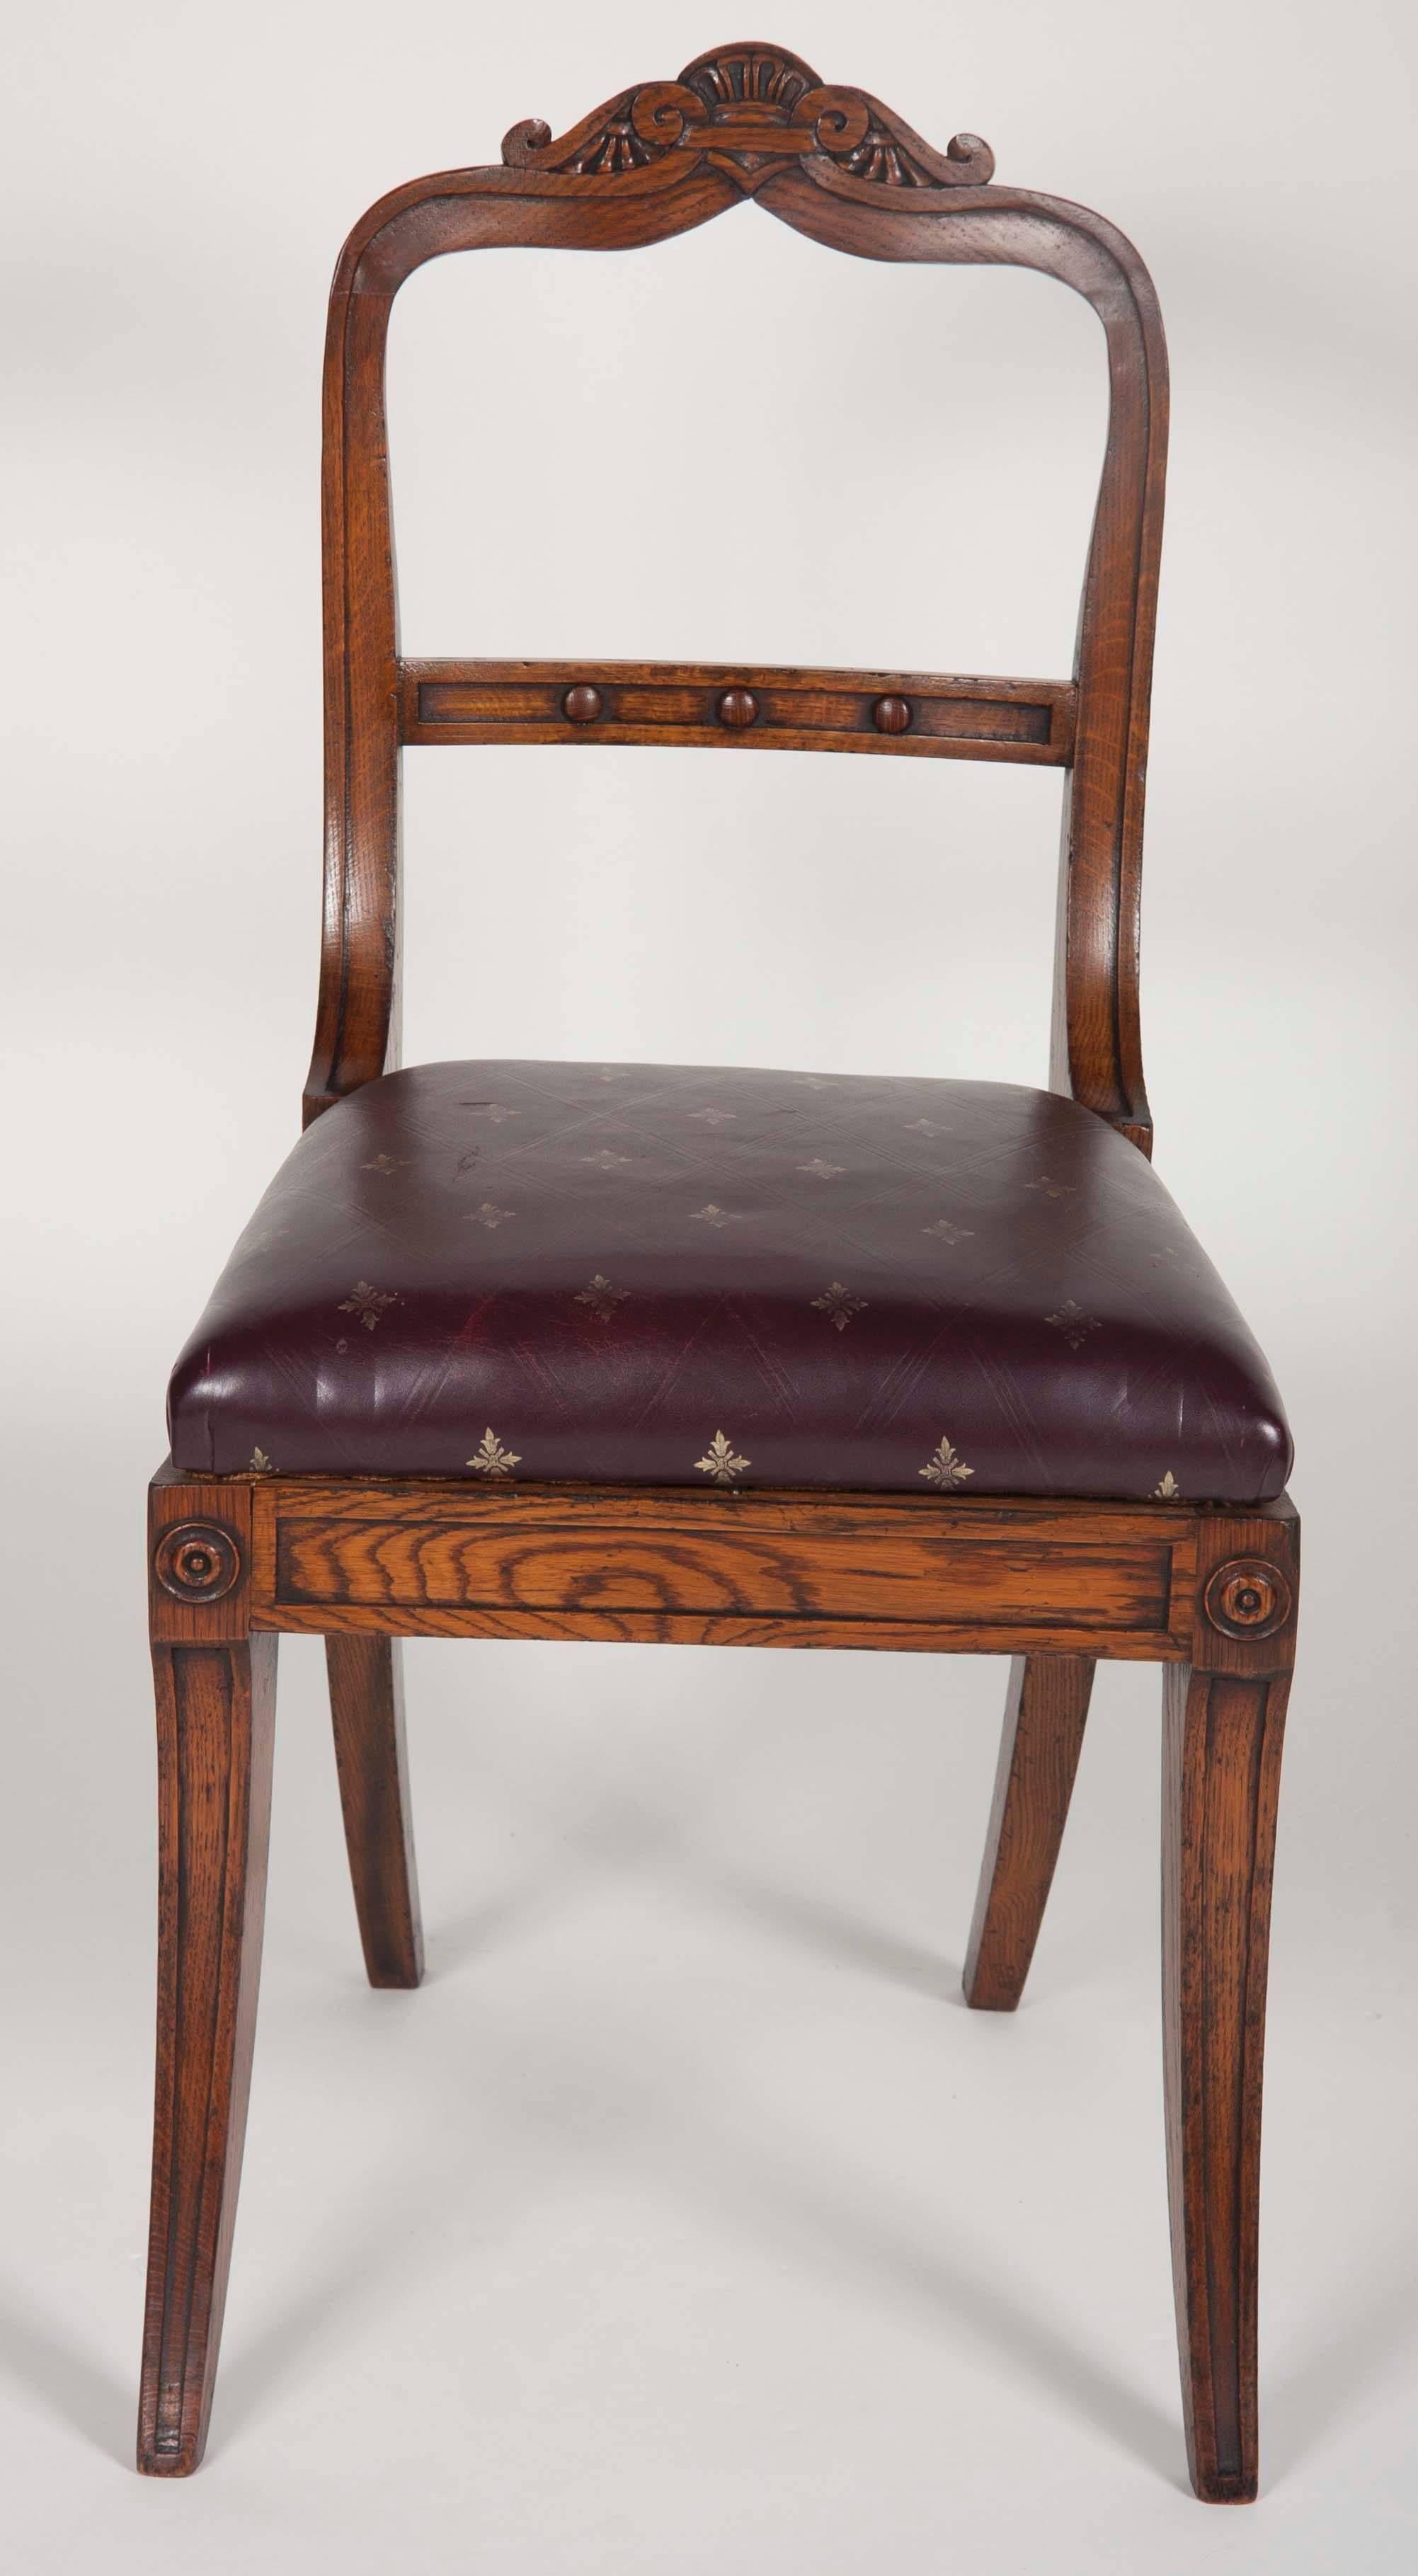 Ein Satz von elf englischen viktorianischen Eichenstühlen, bestehend aus zwei Sesseln und neun Beistellstühlen. Die Stühle haben Ledersitze mit Goldprägung. Die Maße der Sessel sind: 34.5 H x 22 B x 21 T. Die Maße der Beistellsessel sind unten